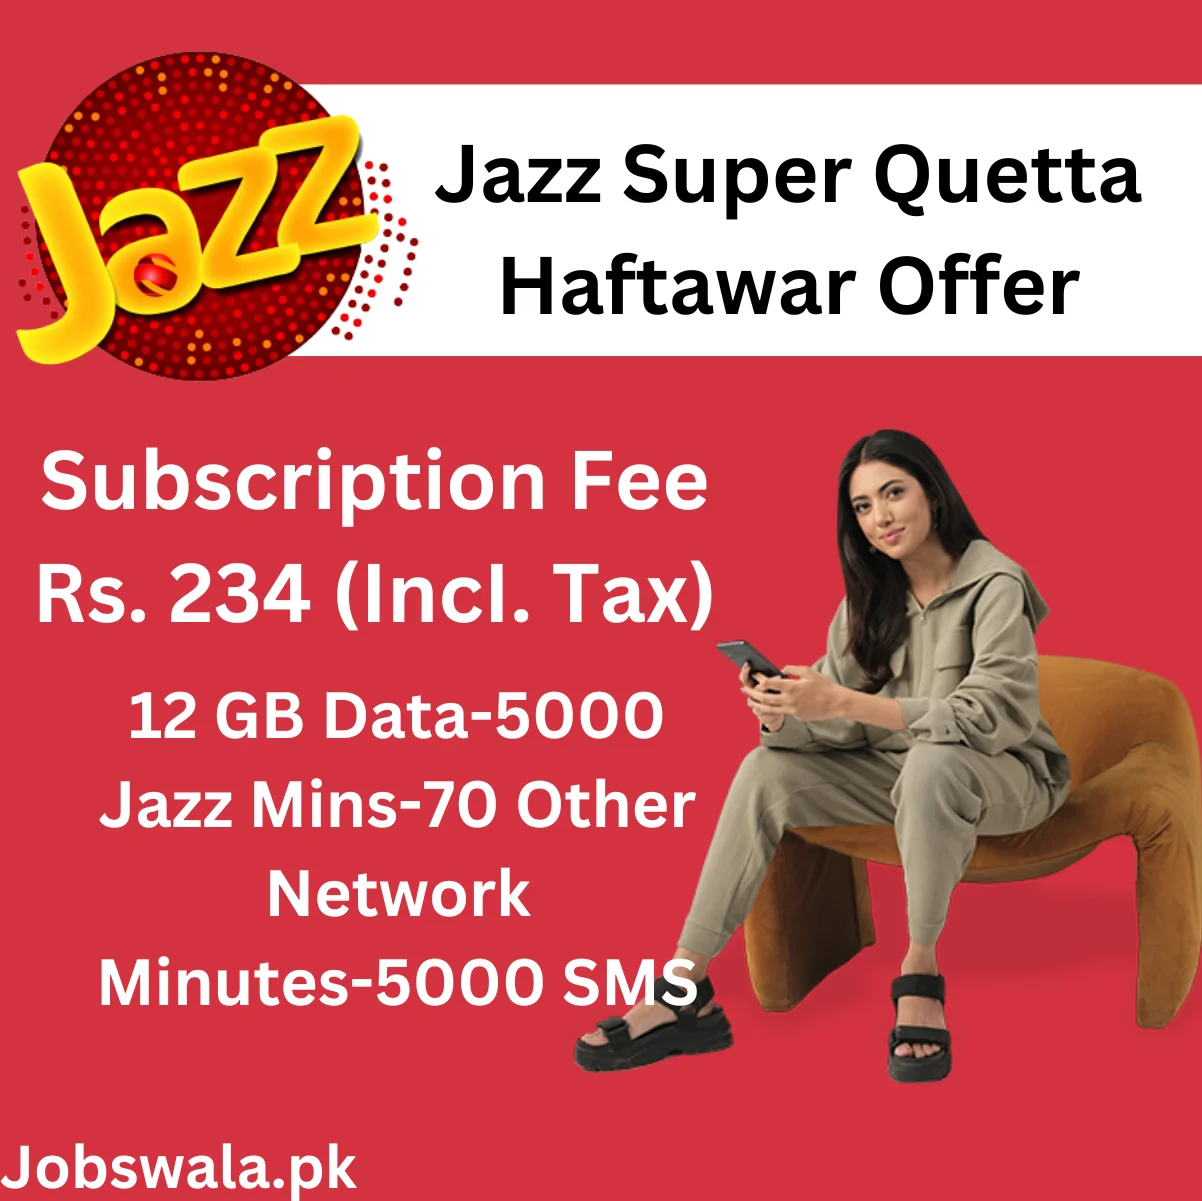 Jazz Super Quetta Haftawar Offer